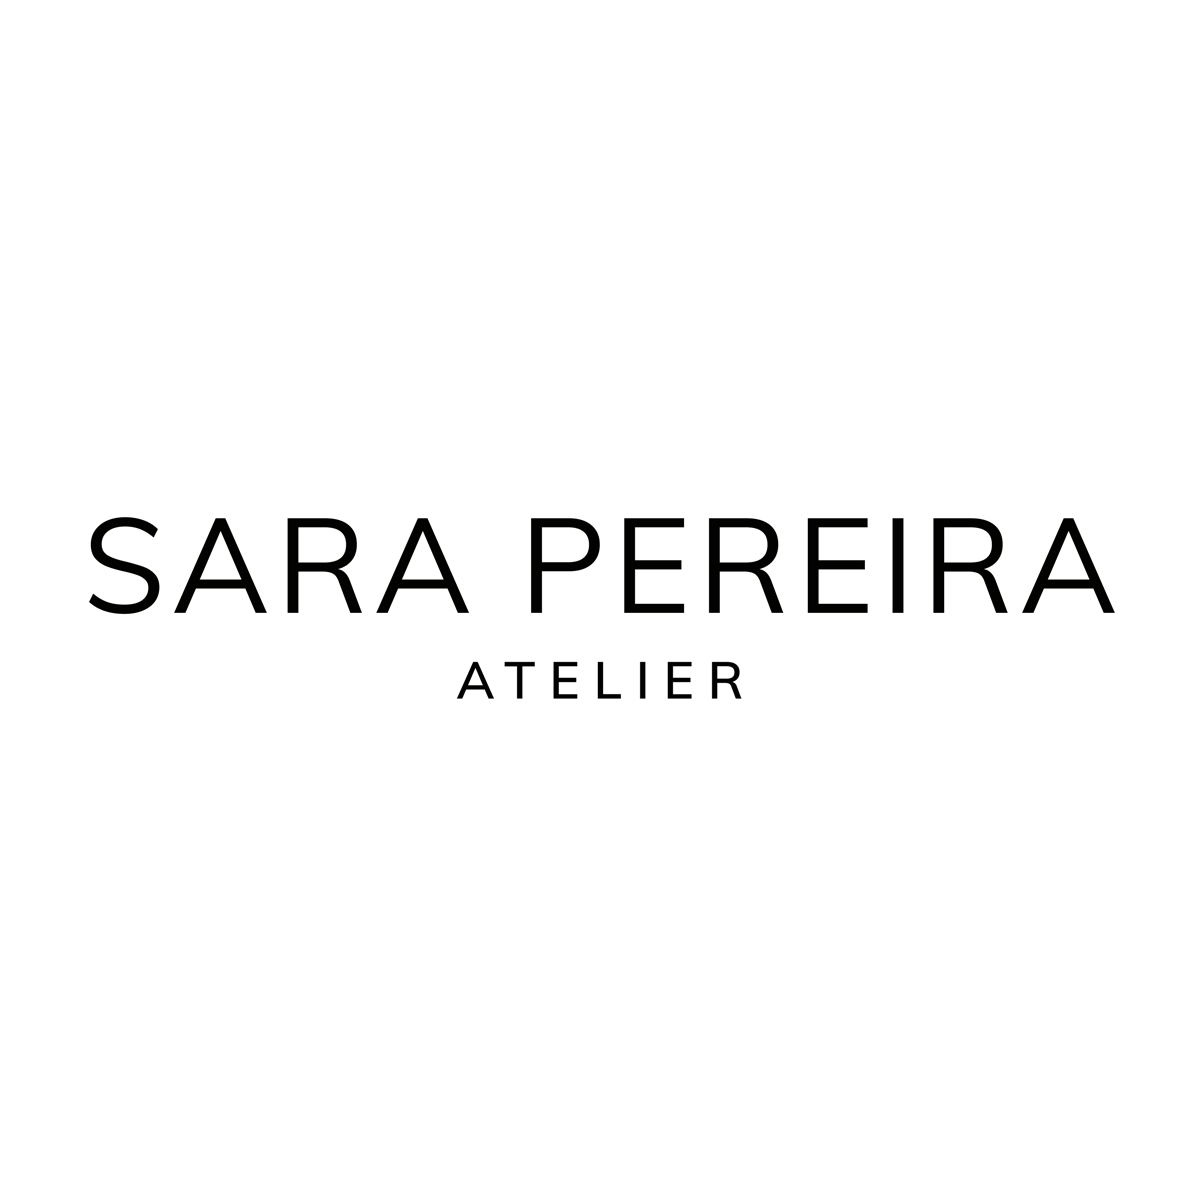 Sara Pereira Atelier